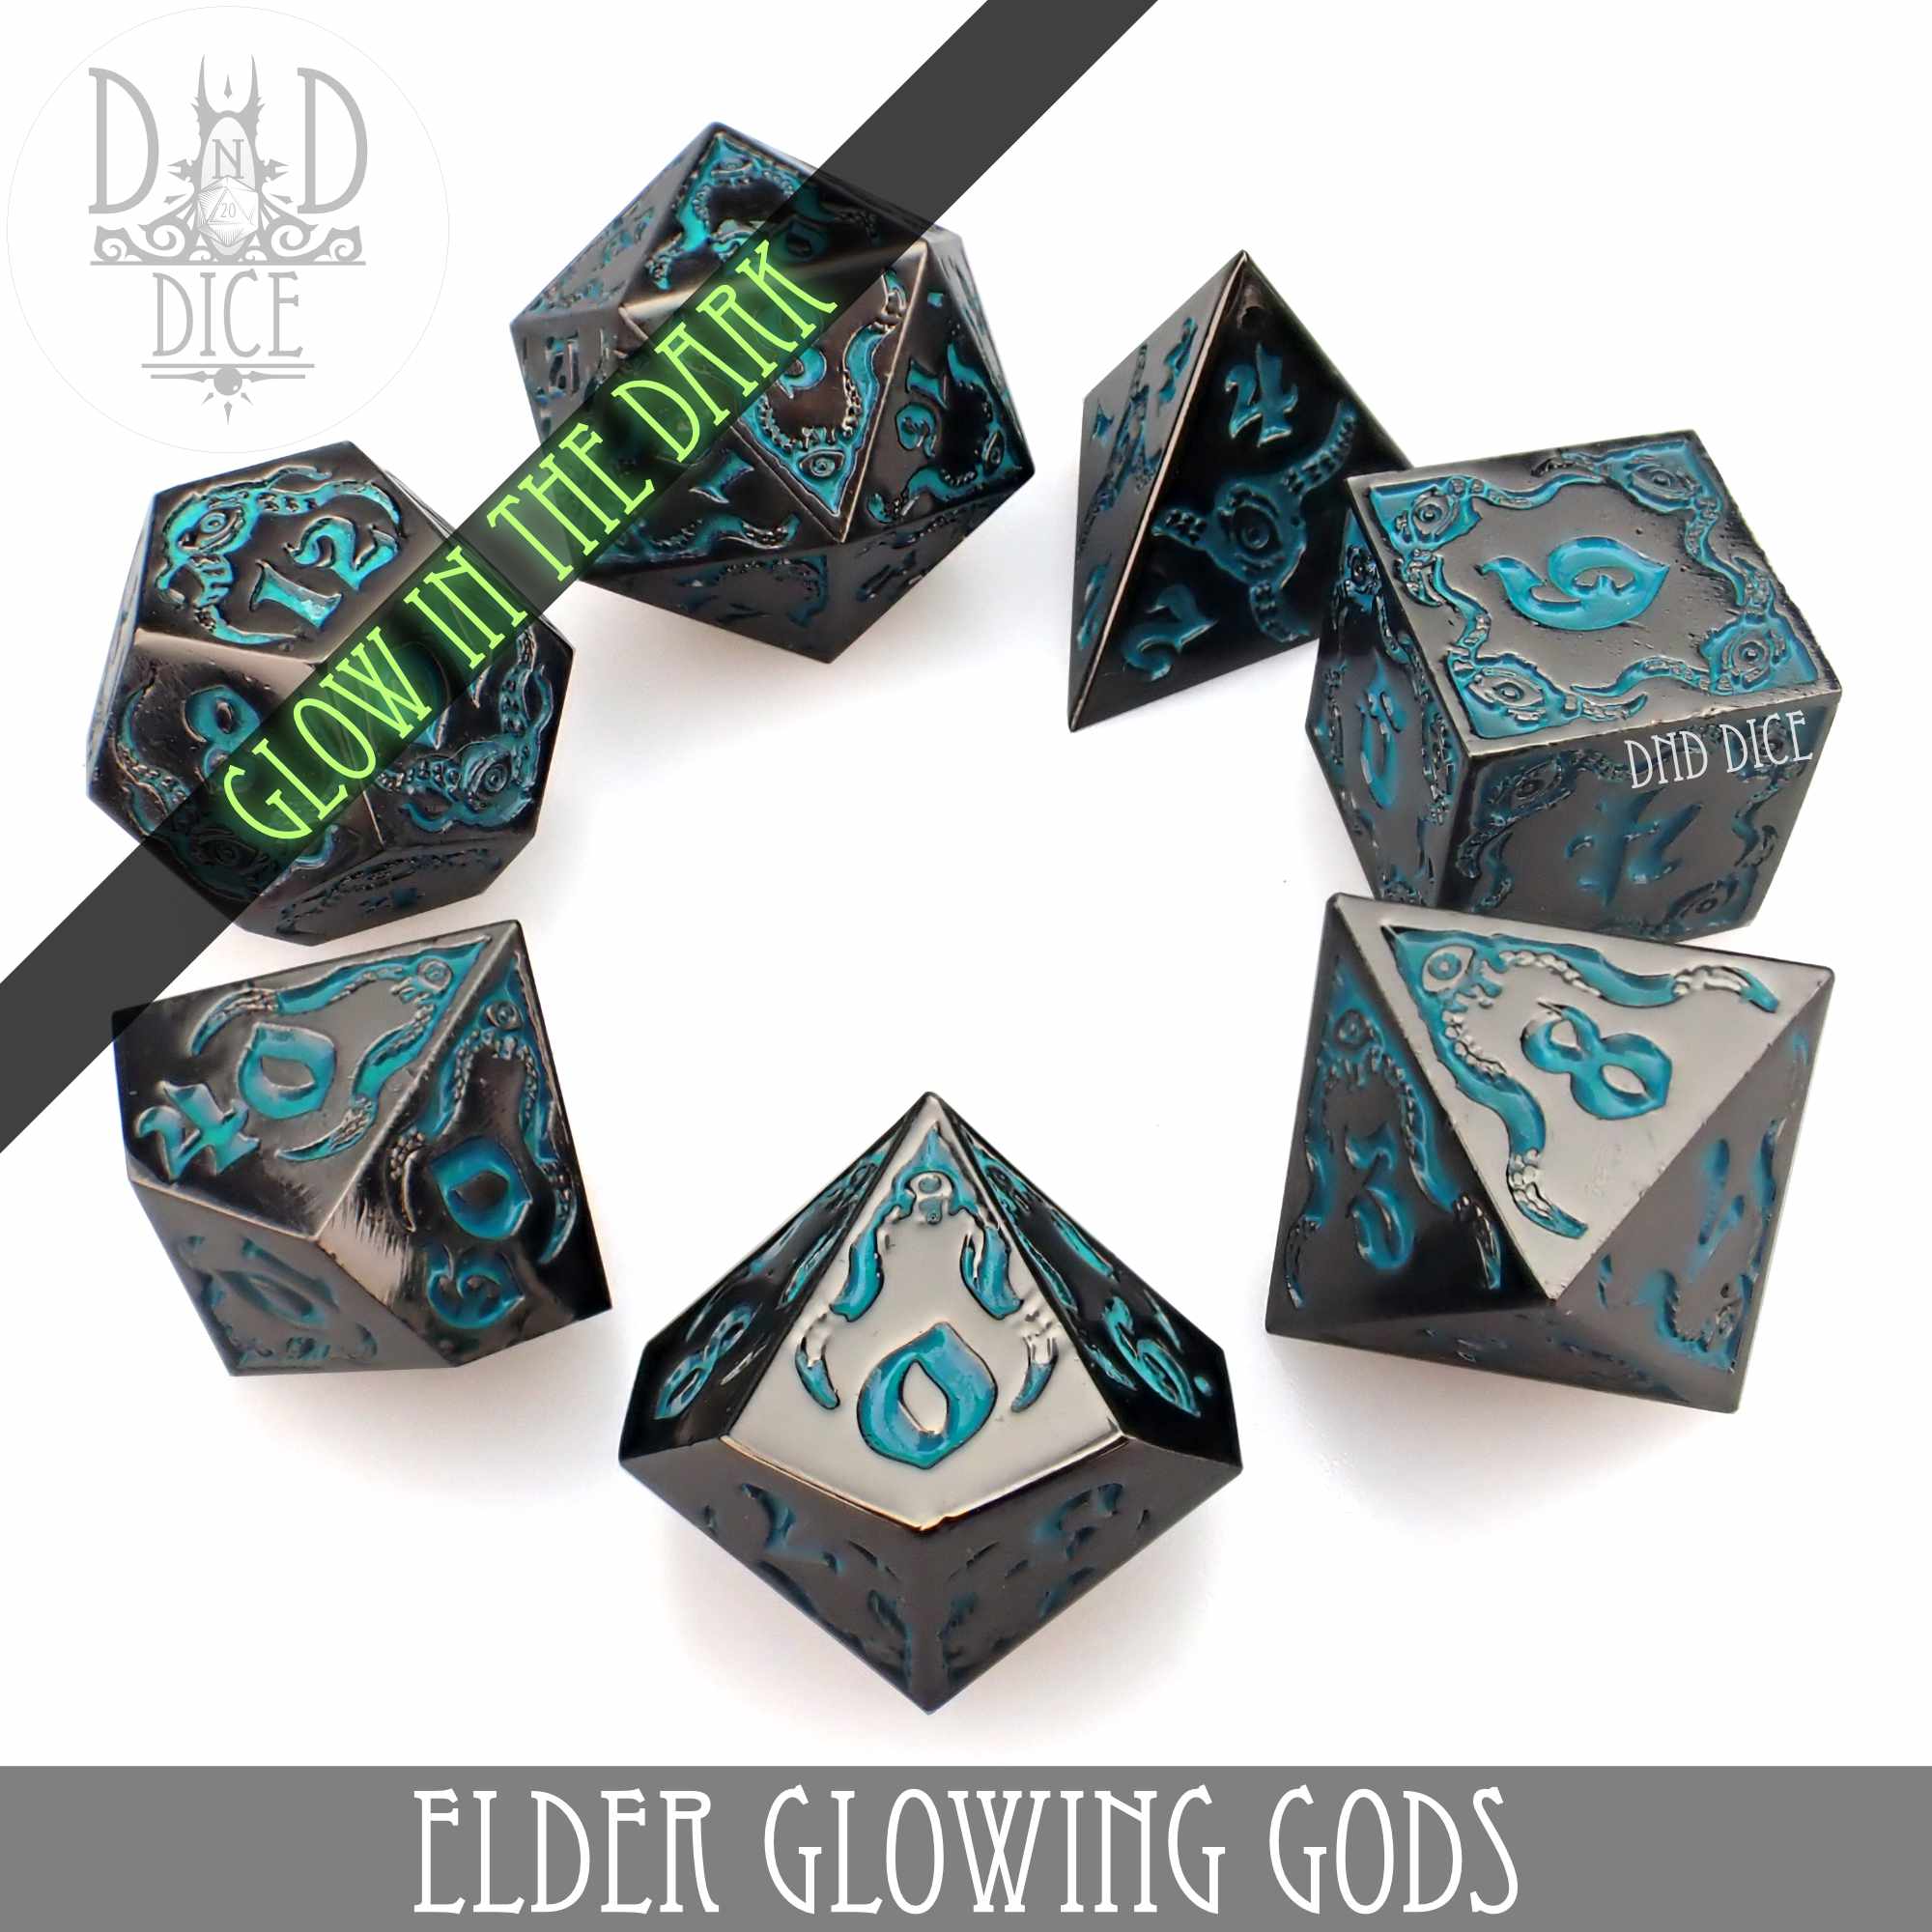 Elder Glowing Gods Metal Dice Set